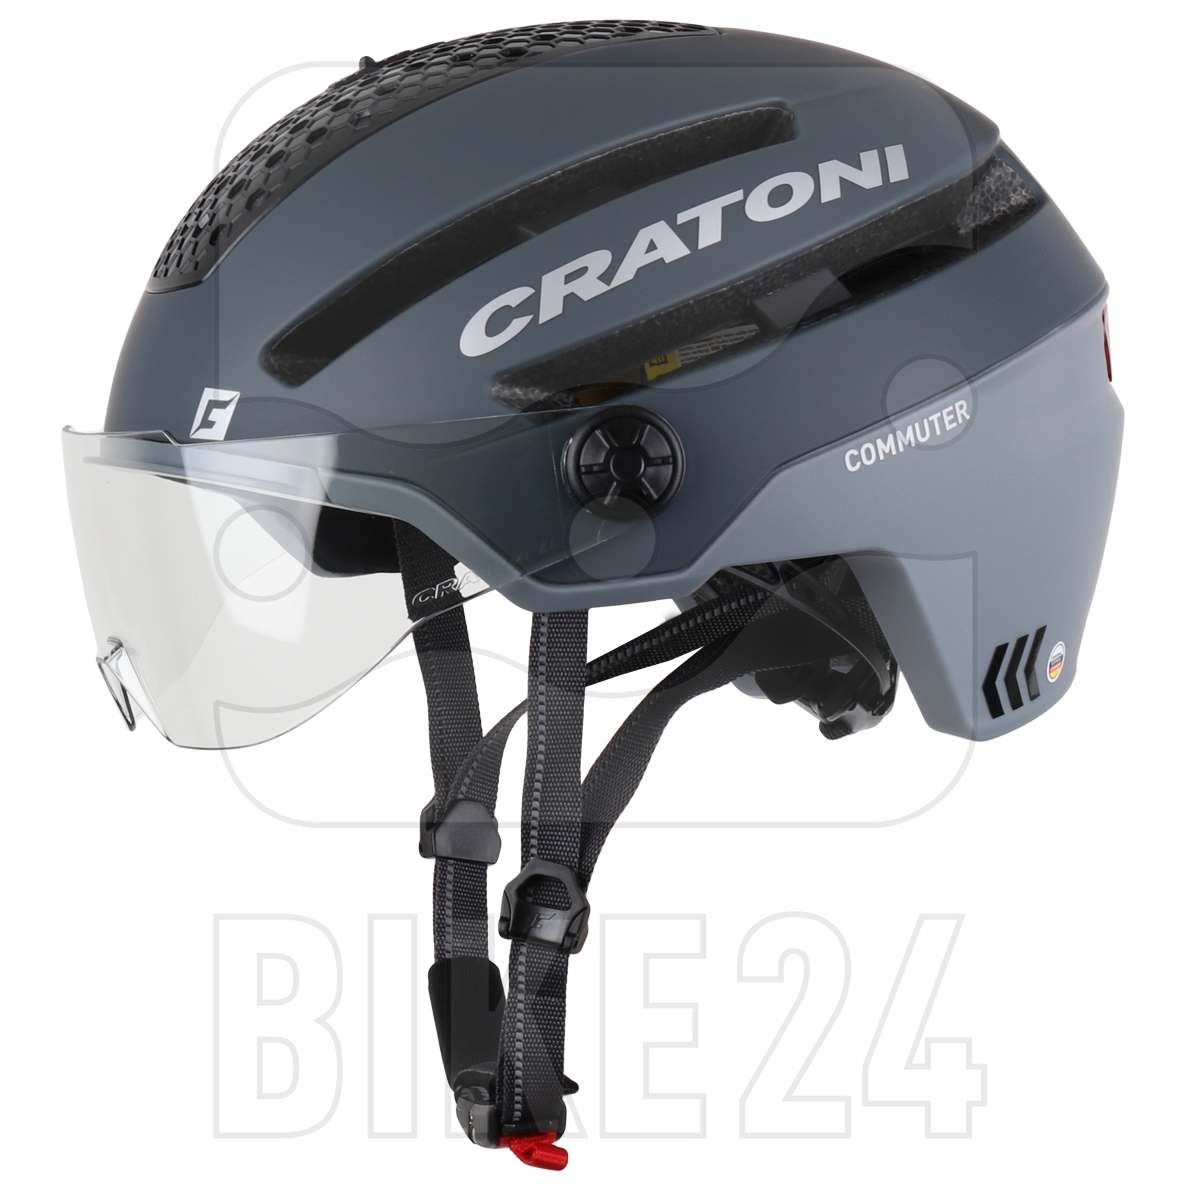 Productfoto van CRATONI Commuter Helmet - grey matt